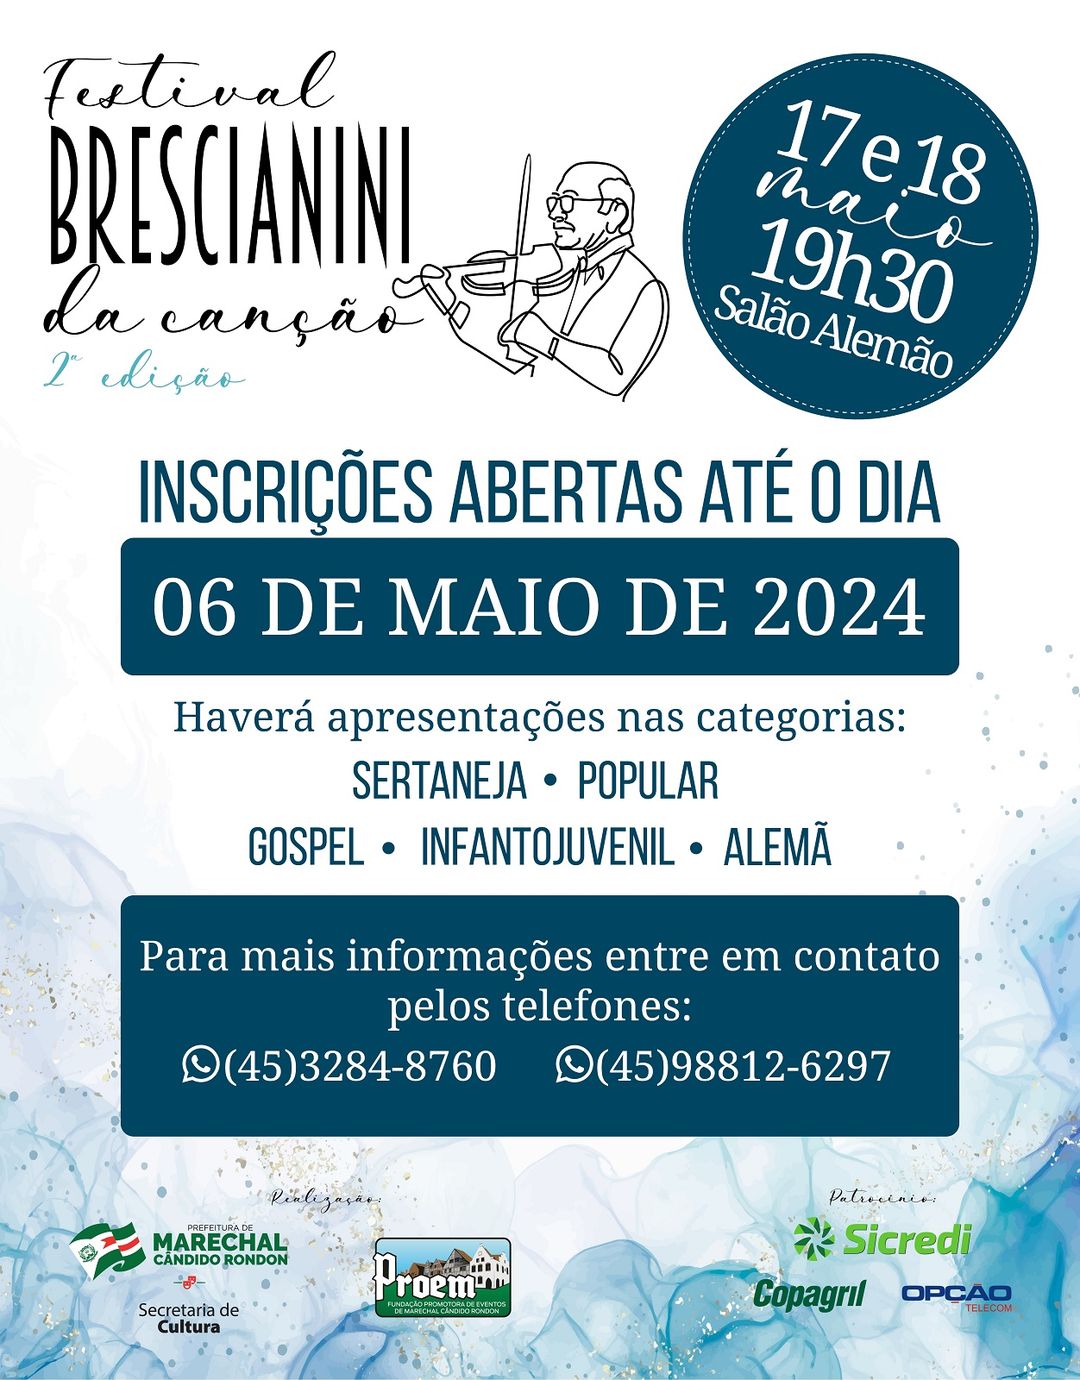 Participe do 2º Festival Brescianini da Canção e Brilhe nos Palcos! 🎤